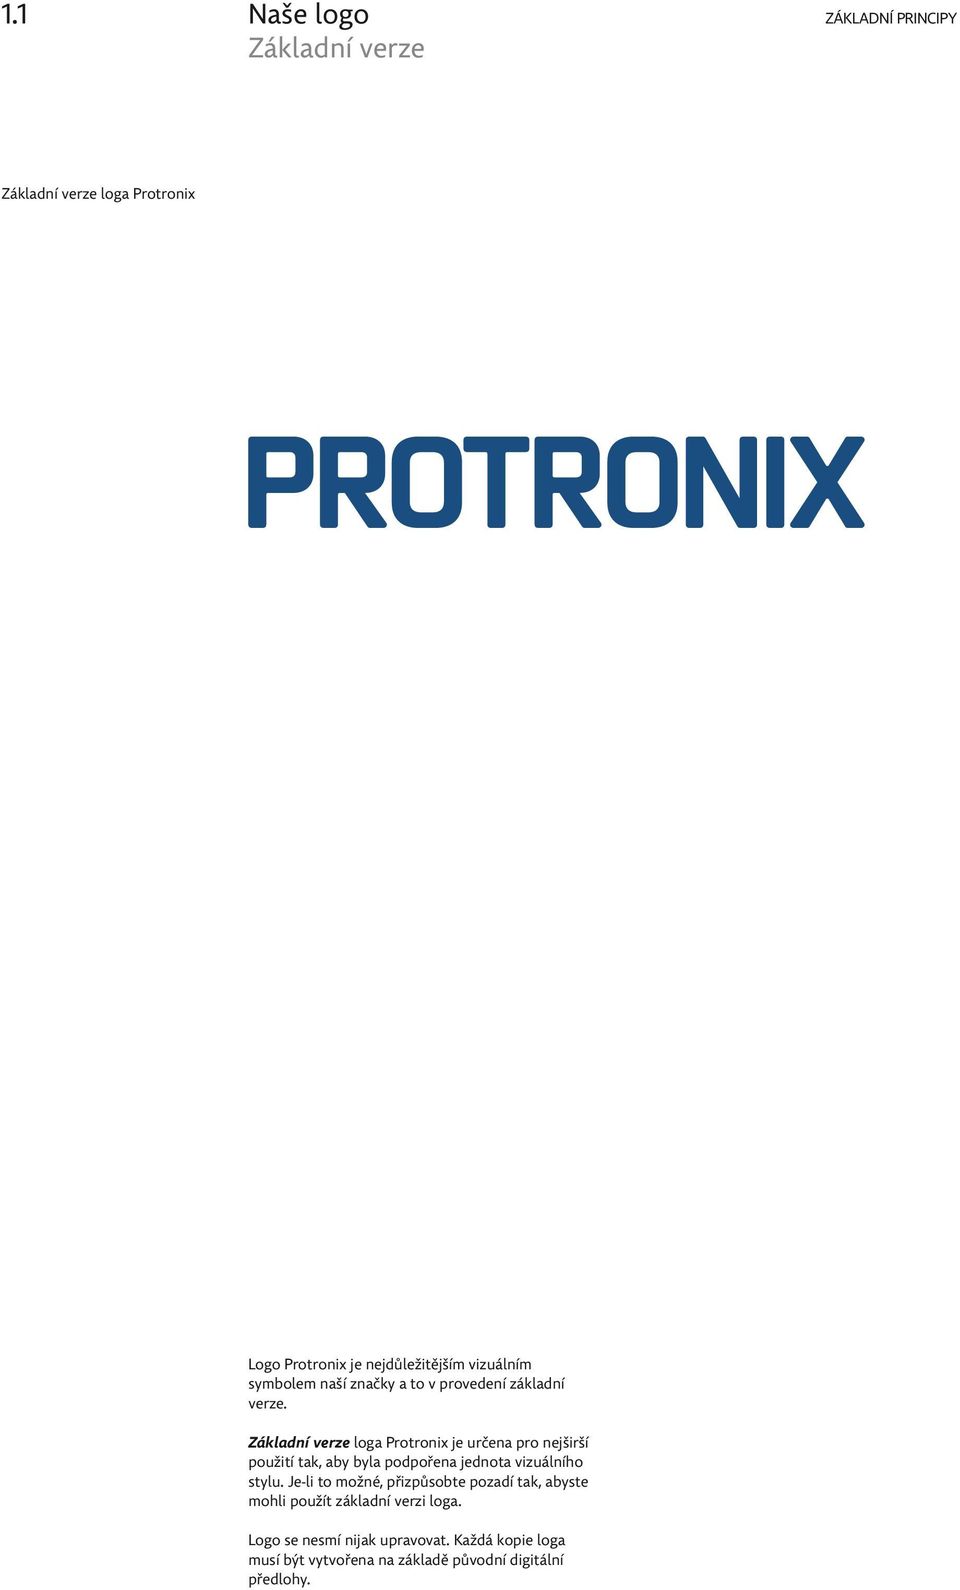 Základní verze loga Protronix je určena pro nejširší použití tak, aby byla podpořena jednota vizuálního stylu.